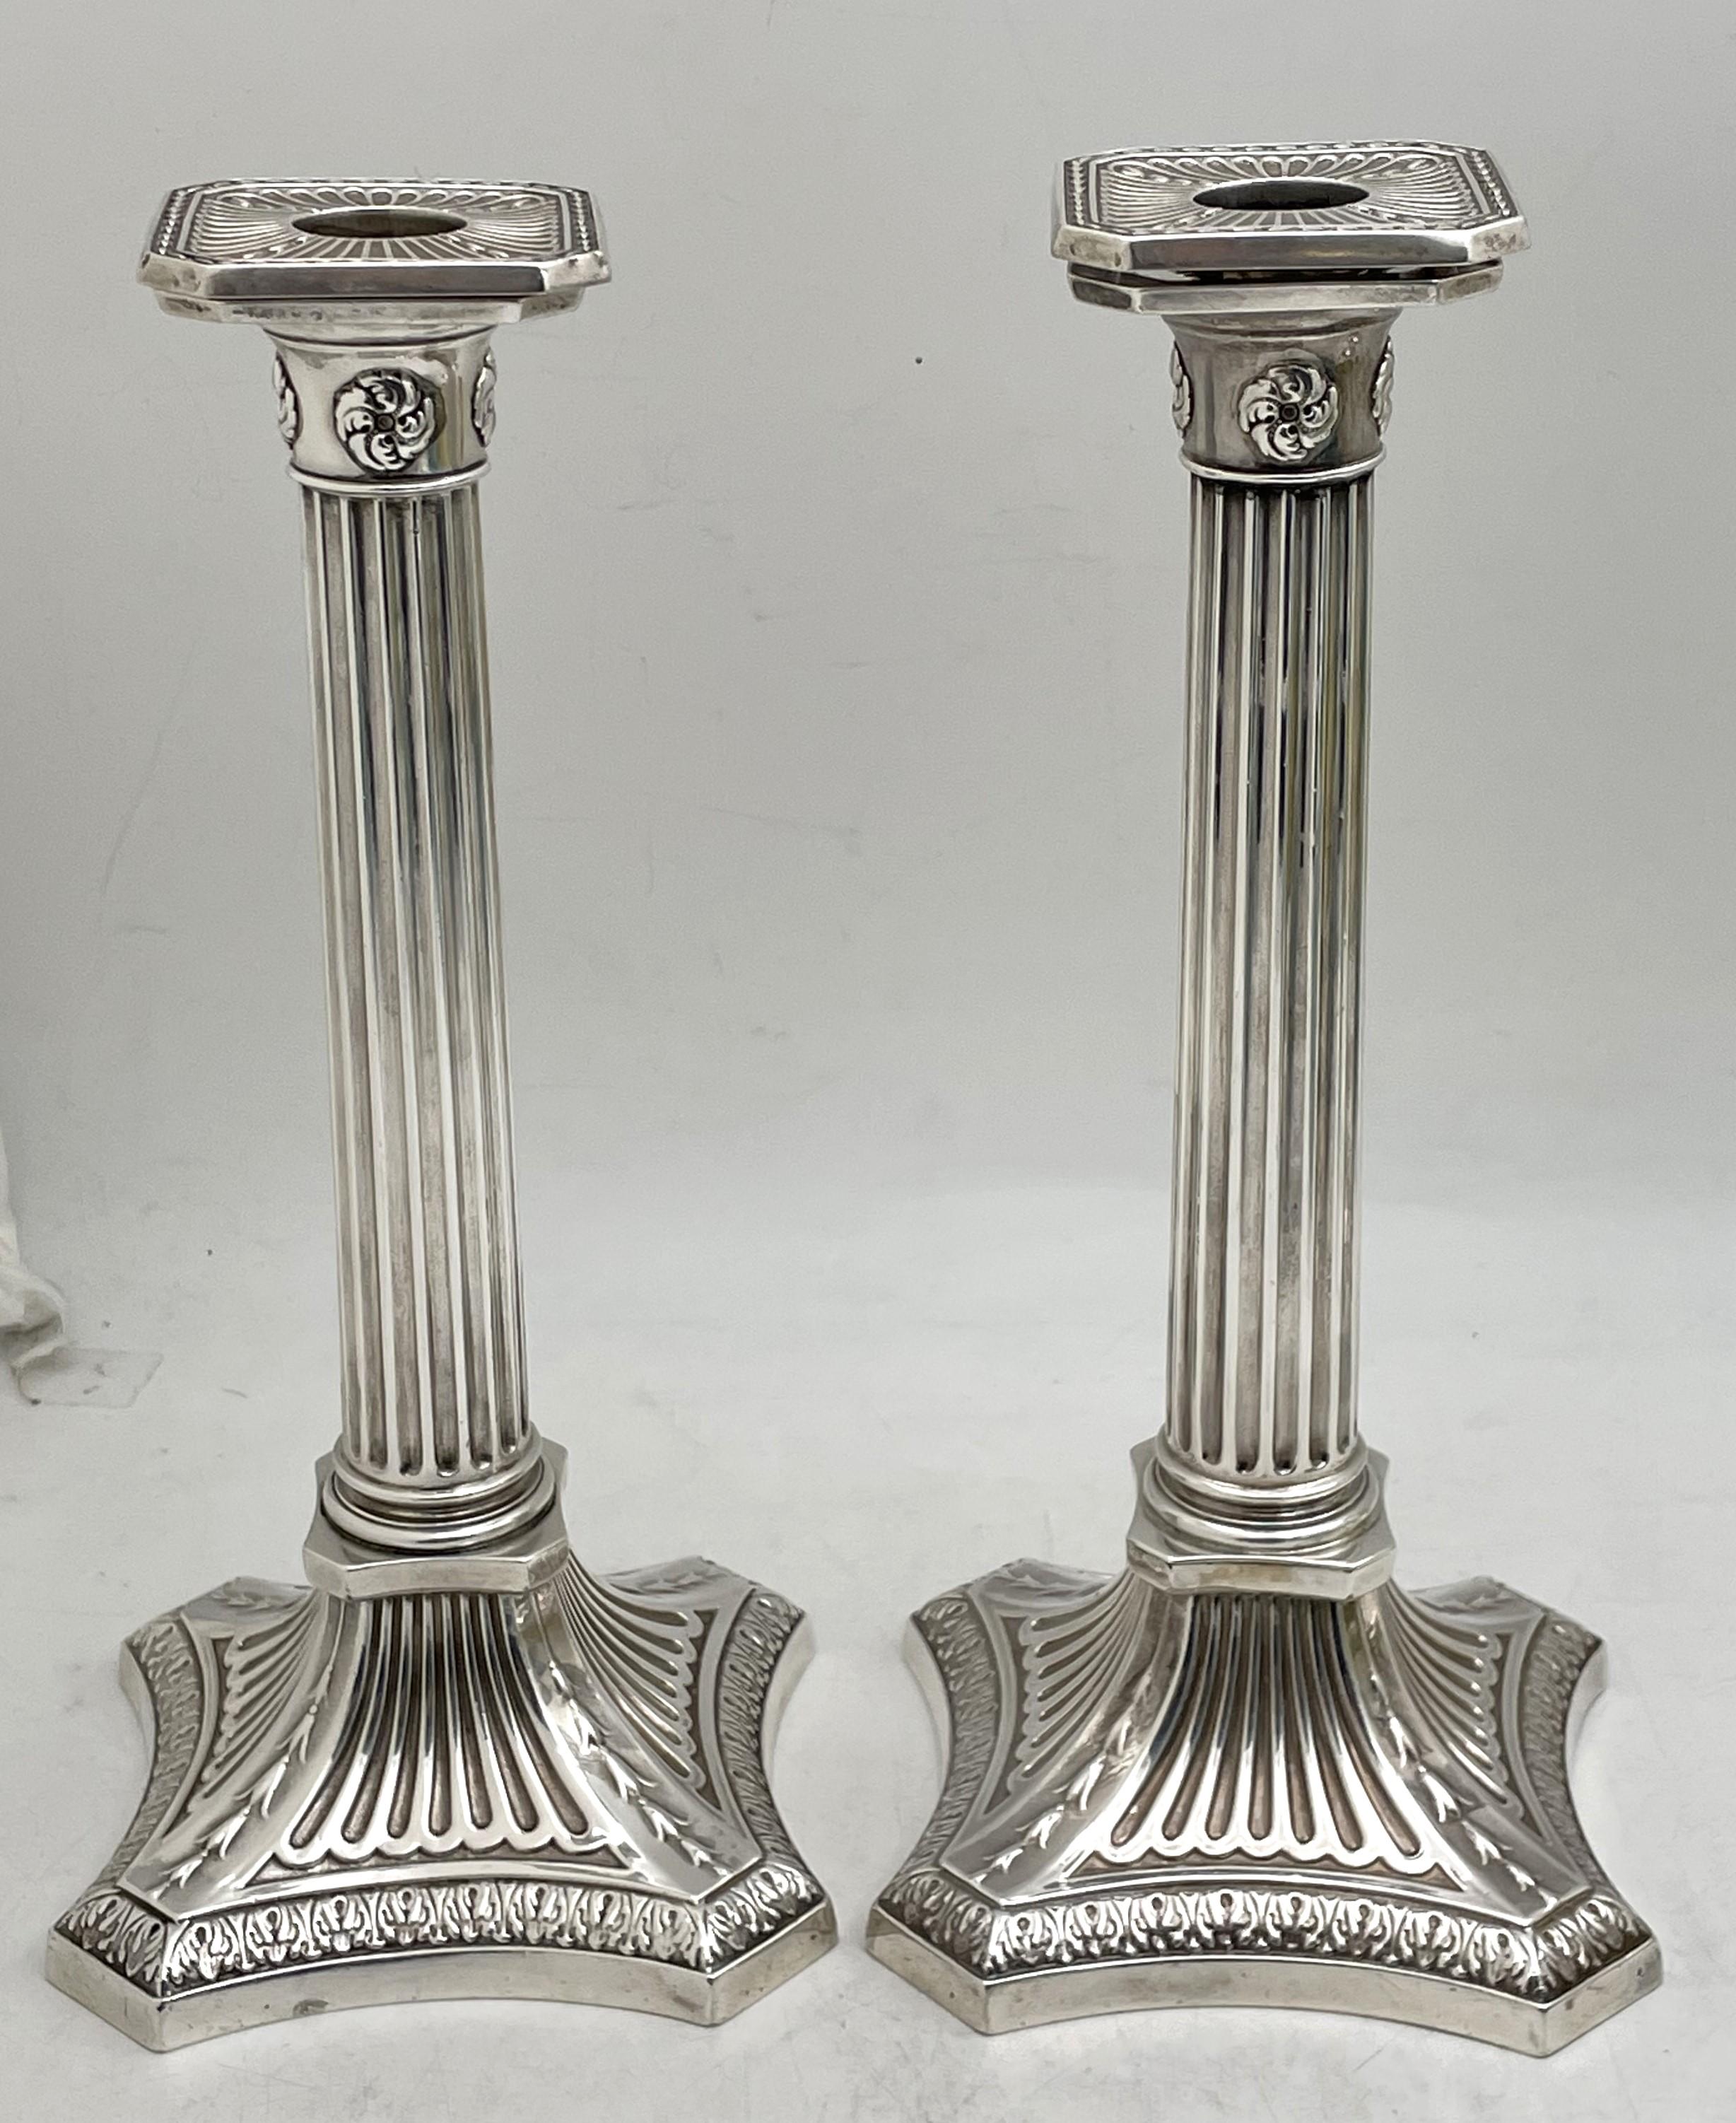 Paire de chandeliers en argent sterling de 1894, conçus comme des colonnes corinthiennes, avec un design élégant et des bobèches amovibles. Ils mesurent 10 1/4'' de hauteur par 4 1/2'' de profondeur à la base, sont pondérés et portent les poinçons